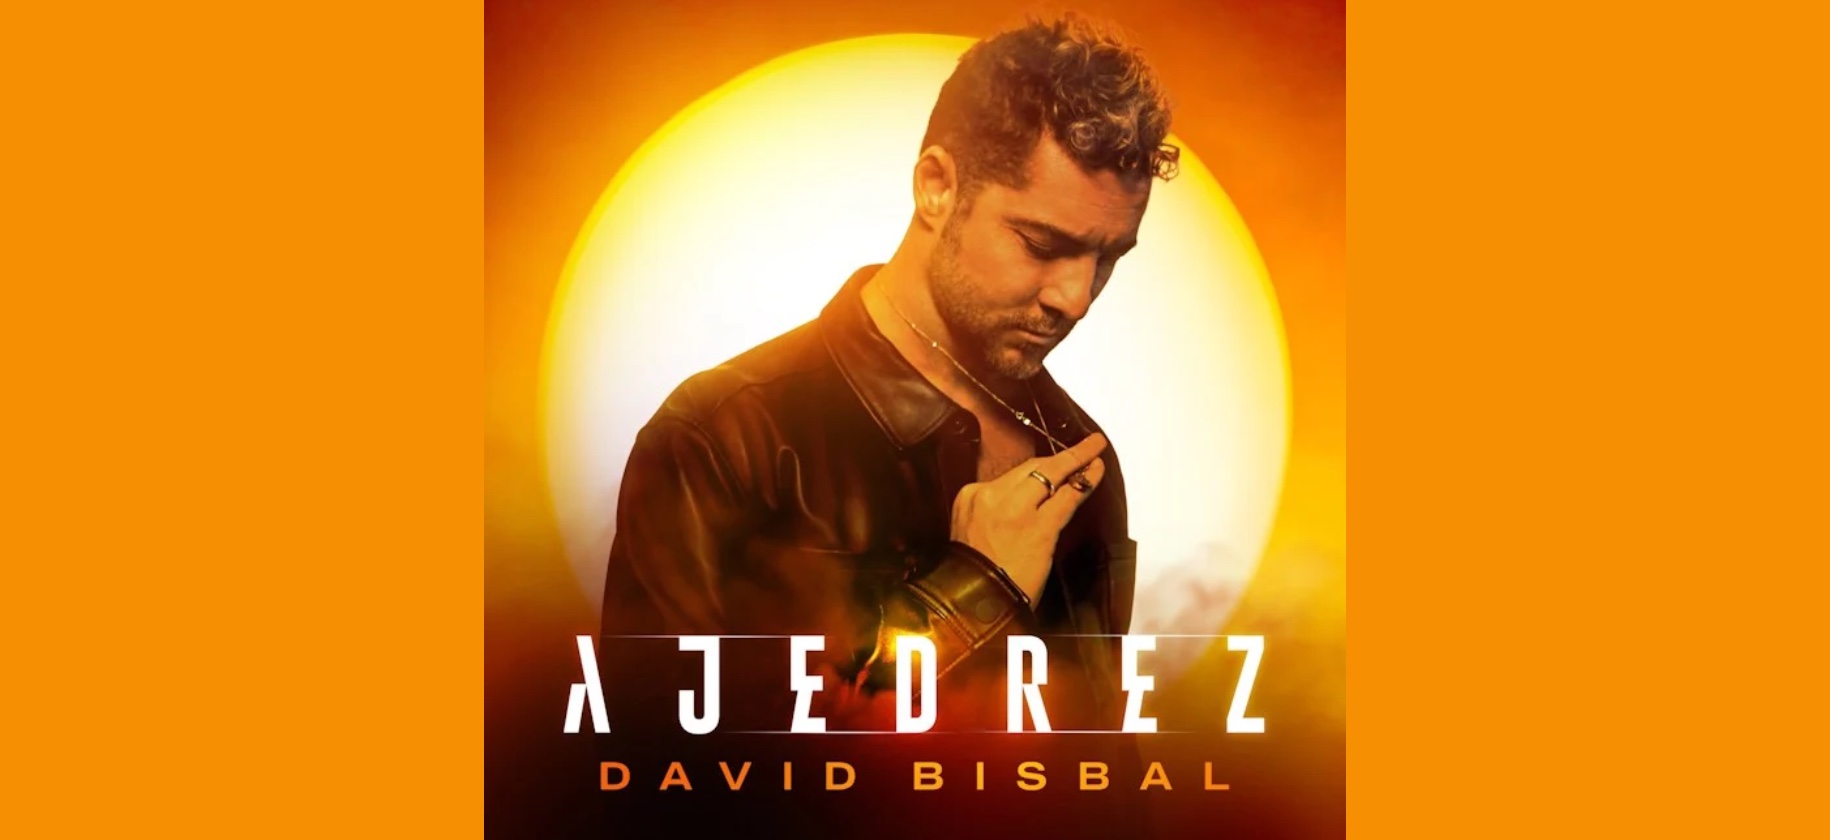 David Bisbal inicia el 2023 con una nueva canción: “Ajedrez